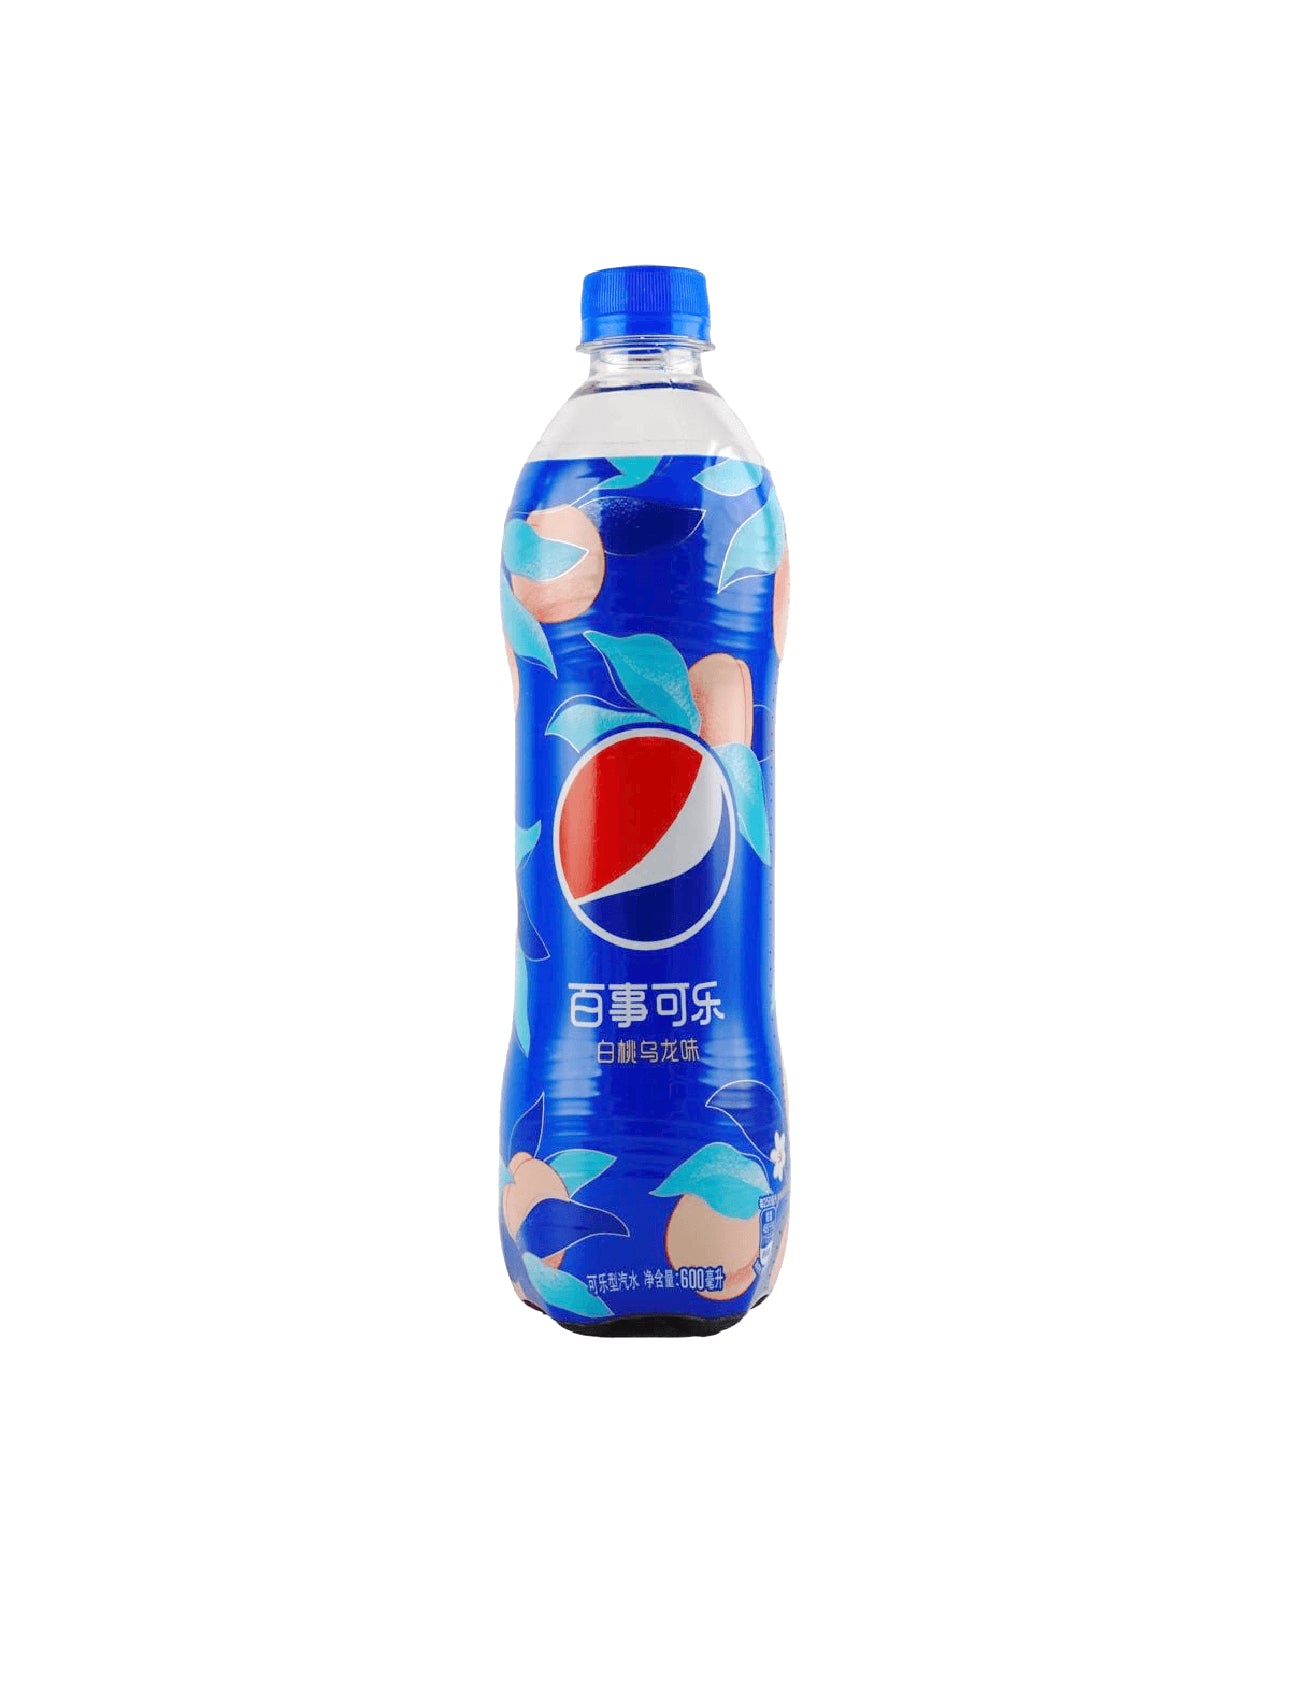 White Peach Pepsi (China)